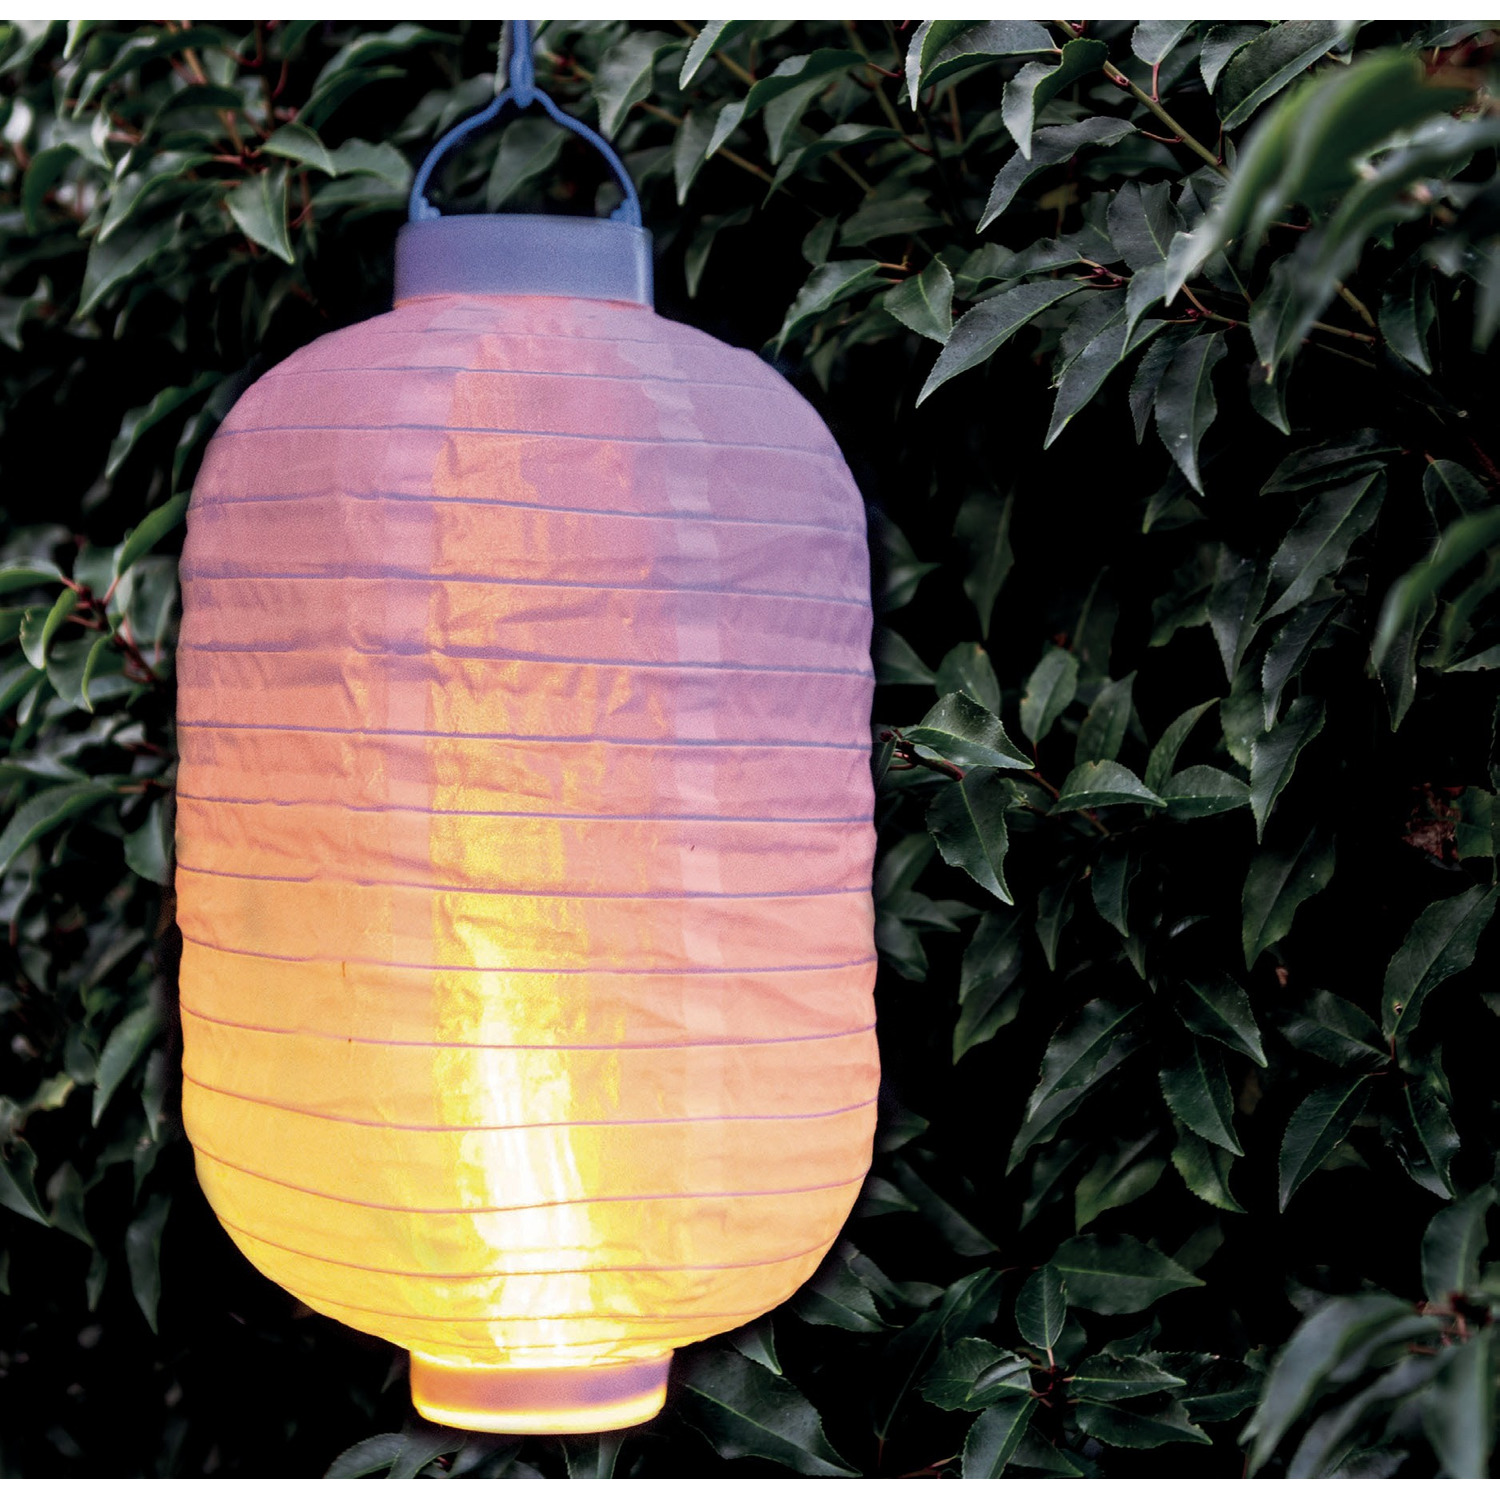 3x stuks luxe solar lampion/lampionnen wit met realistisch vlameffect 20 x 30 cm